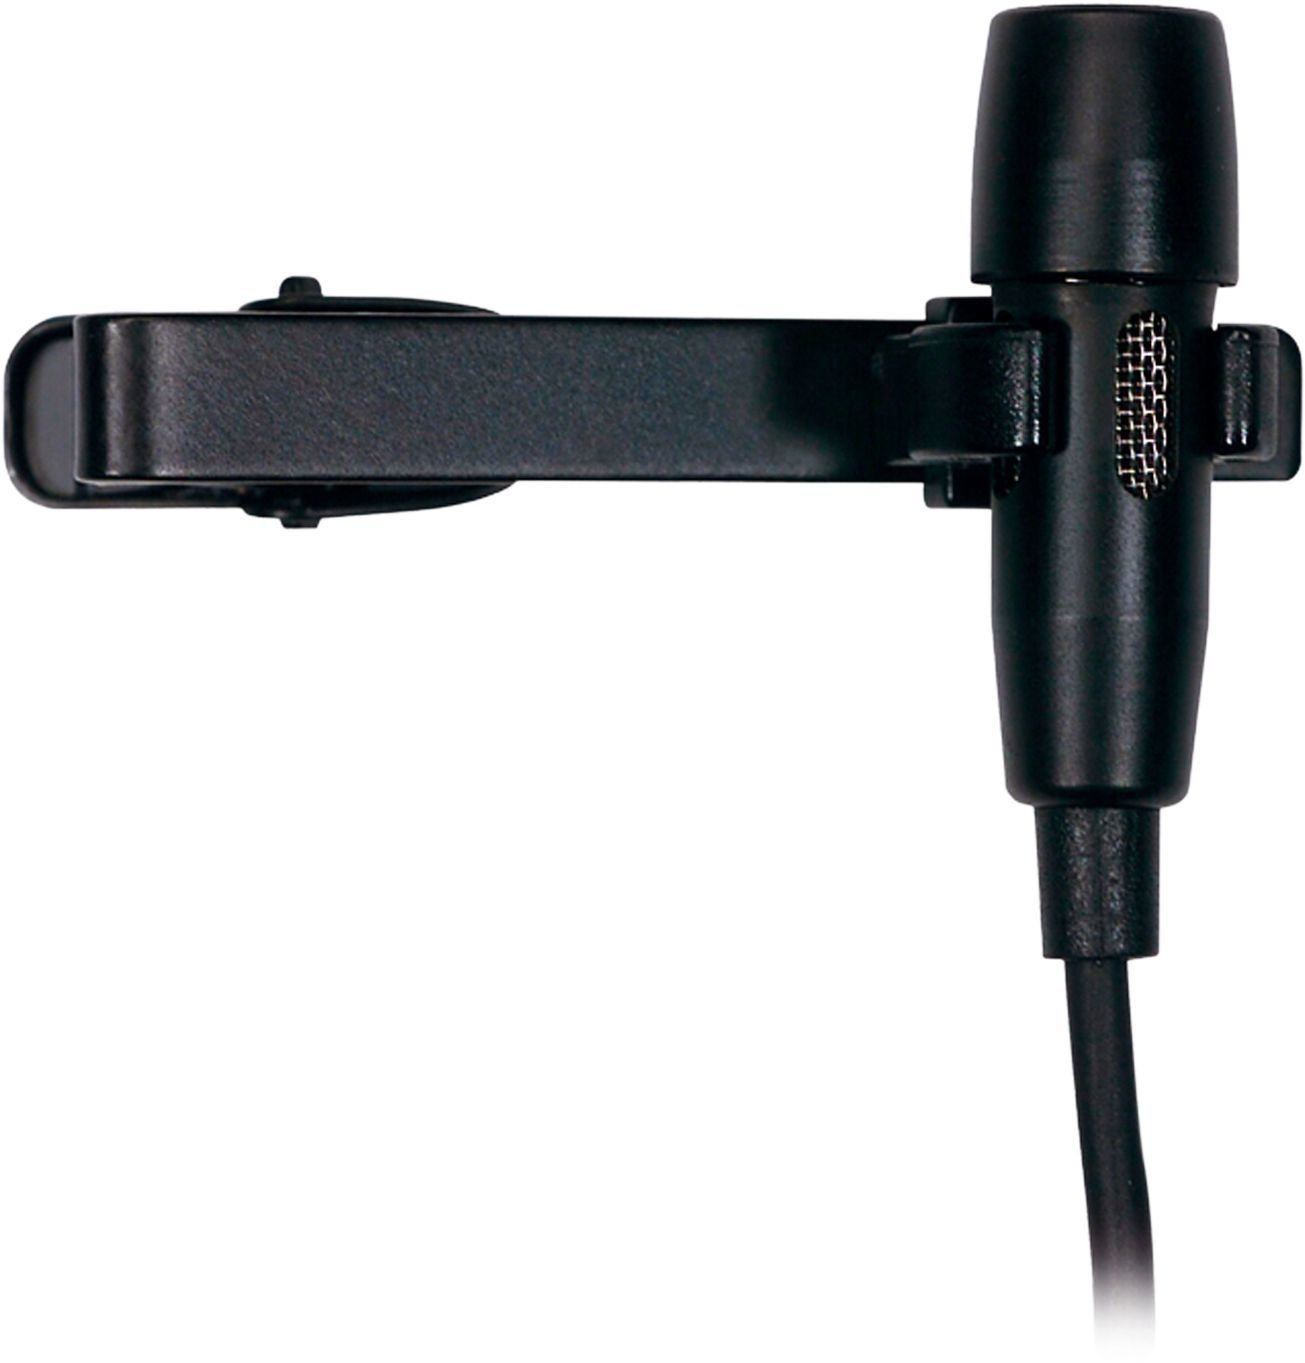 Mikrofon pojemnosciowy krawatowy/lavalier AKG CK 99 L